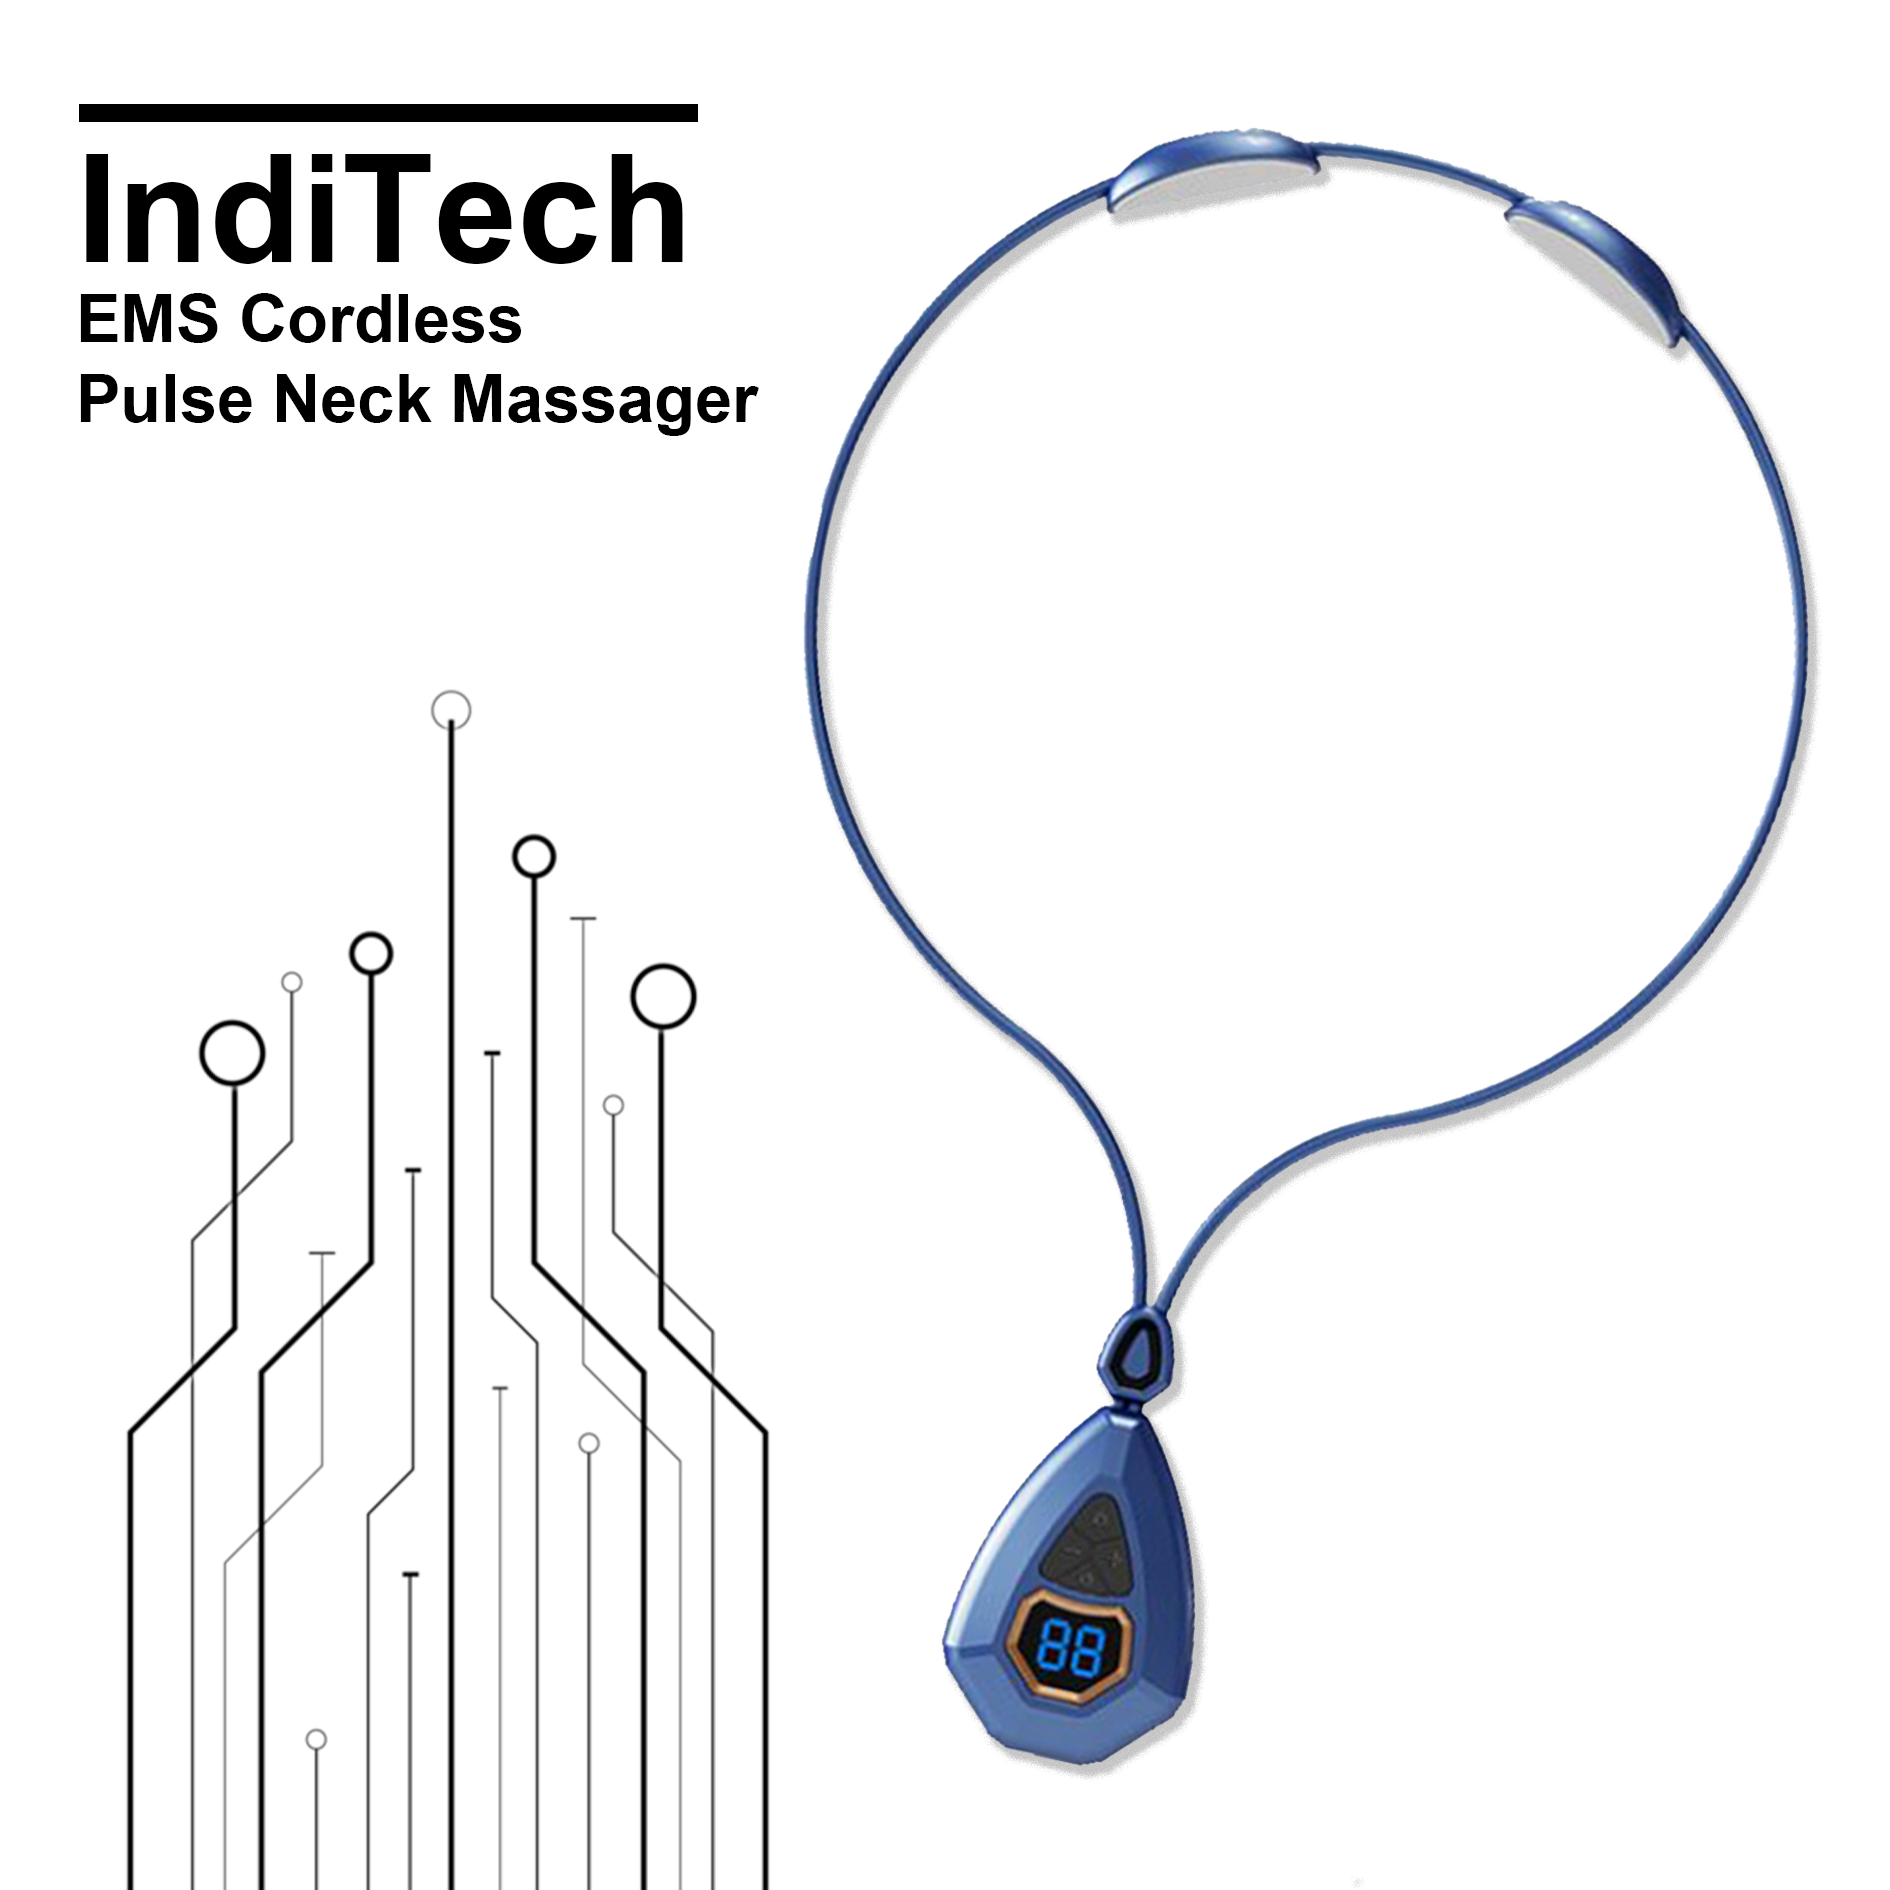 IndiTech EMS Cordless Pulse Neck Massager